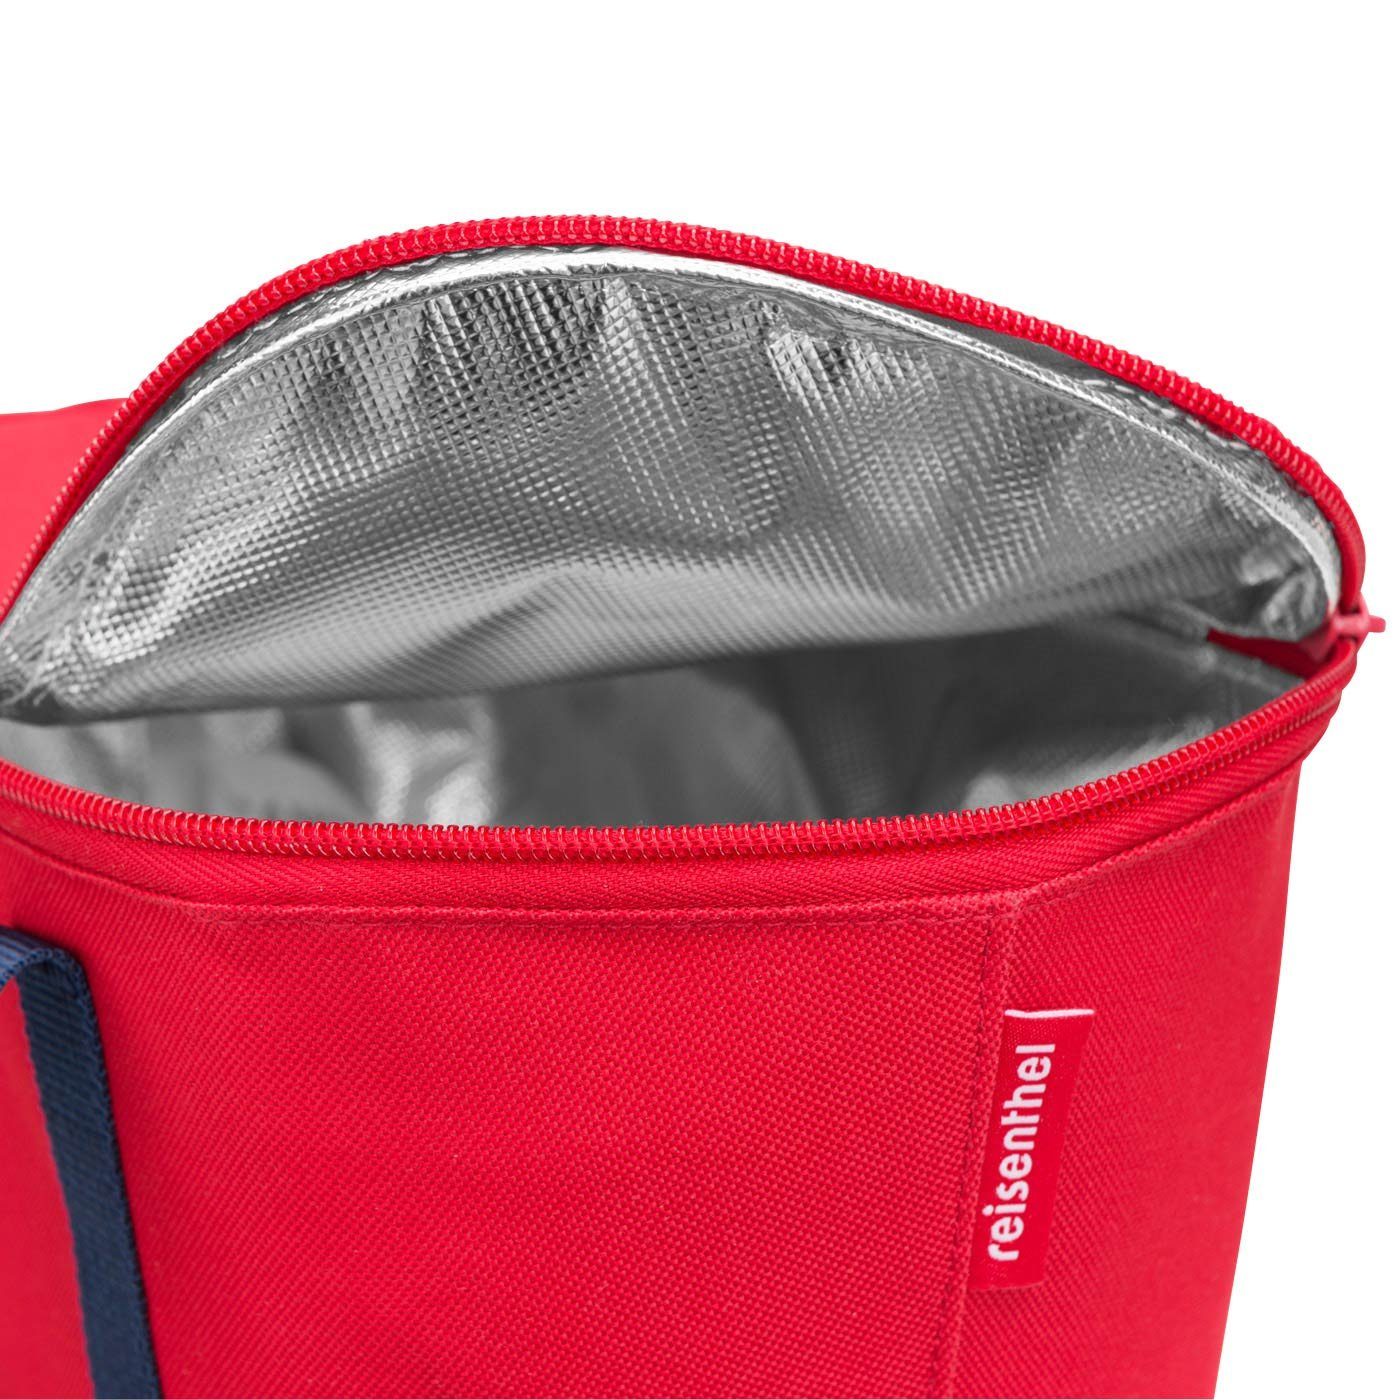 Einkaufskorb, isolierte REISENTHEL® Kids rot tasche reisenthel kühltasche Kinder picknicktasche coolerbag xs